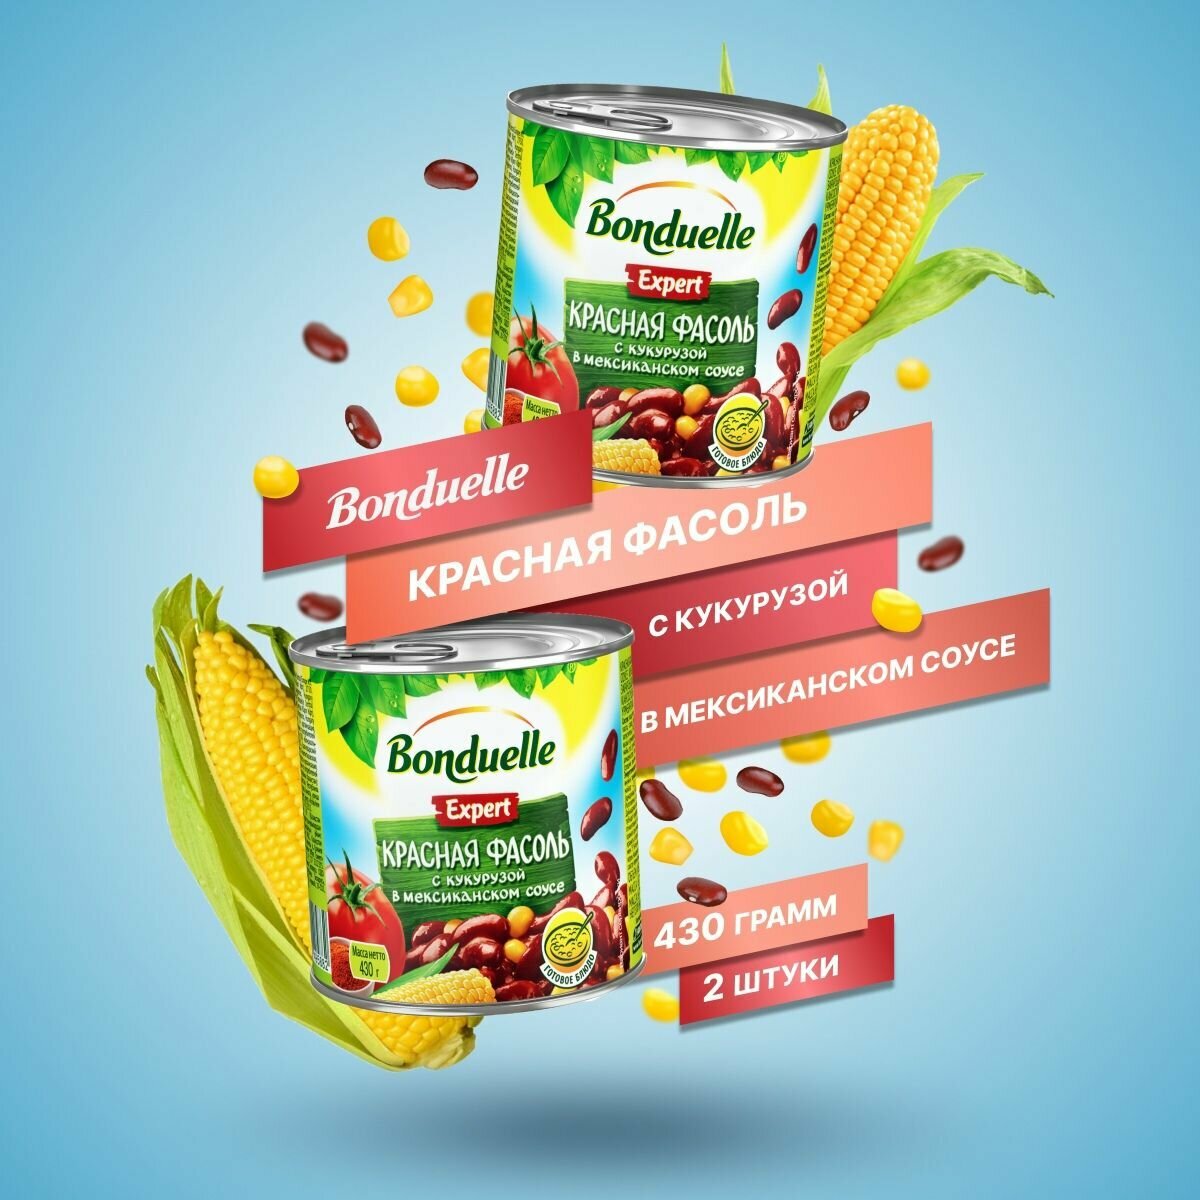 Bonduelle/ Овощные консервы Фасоль красная Expert с кукурузой в мексиканском соусе, 430 г, 2 шт